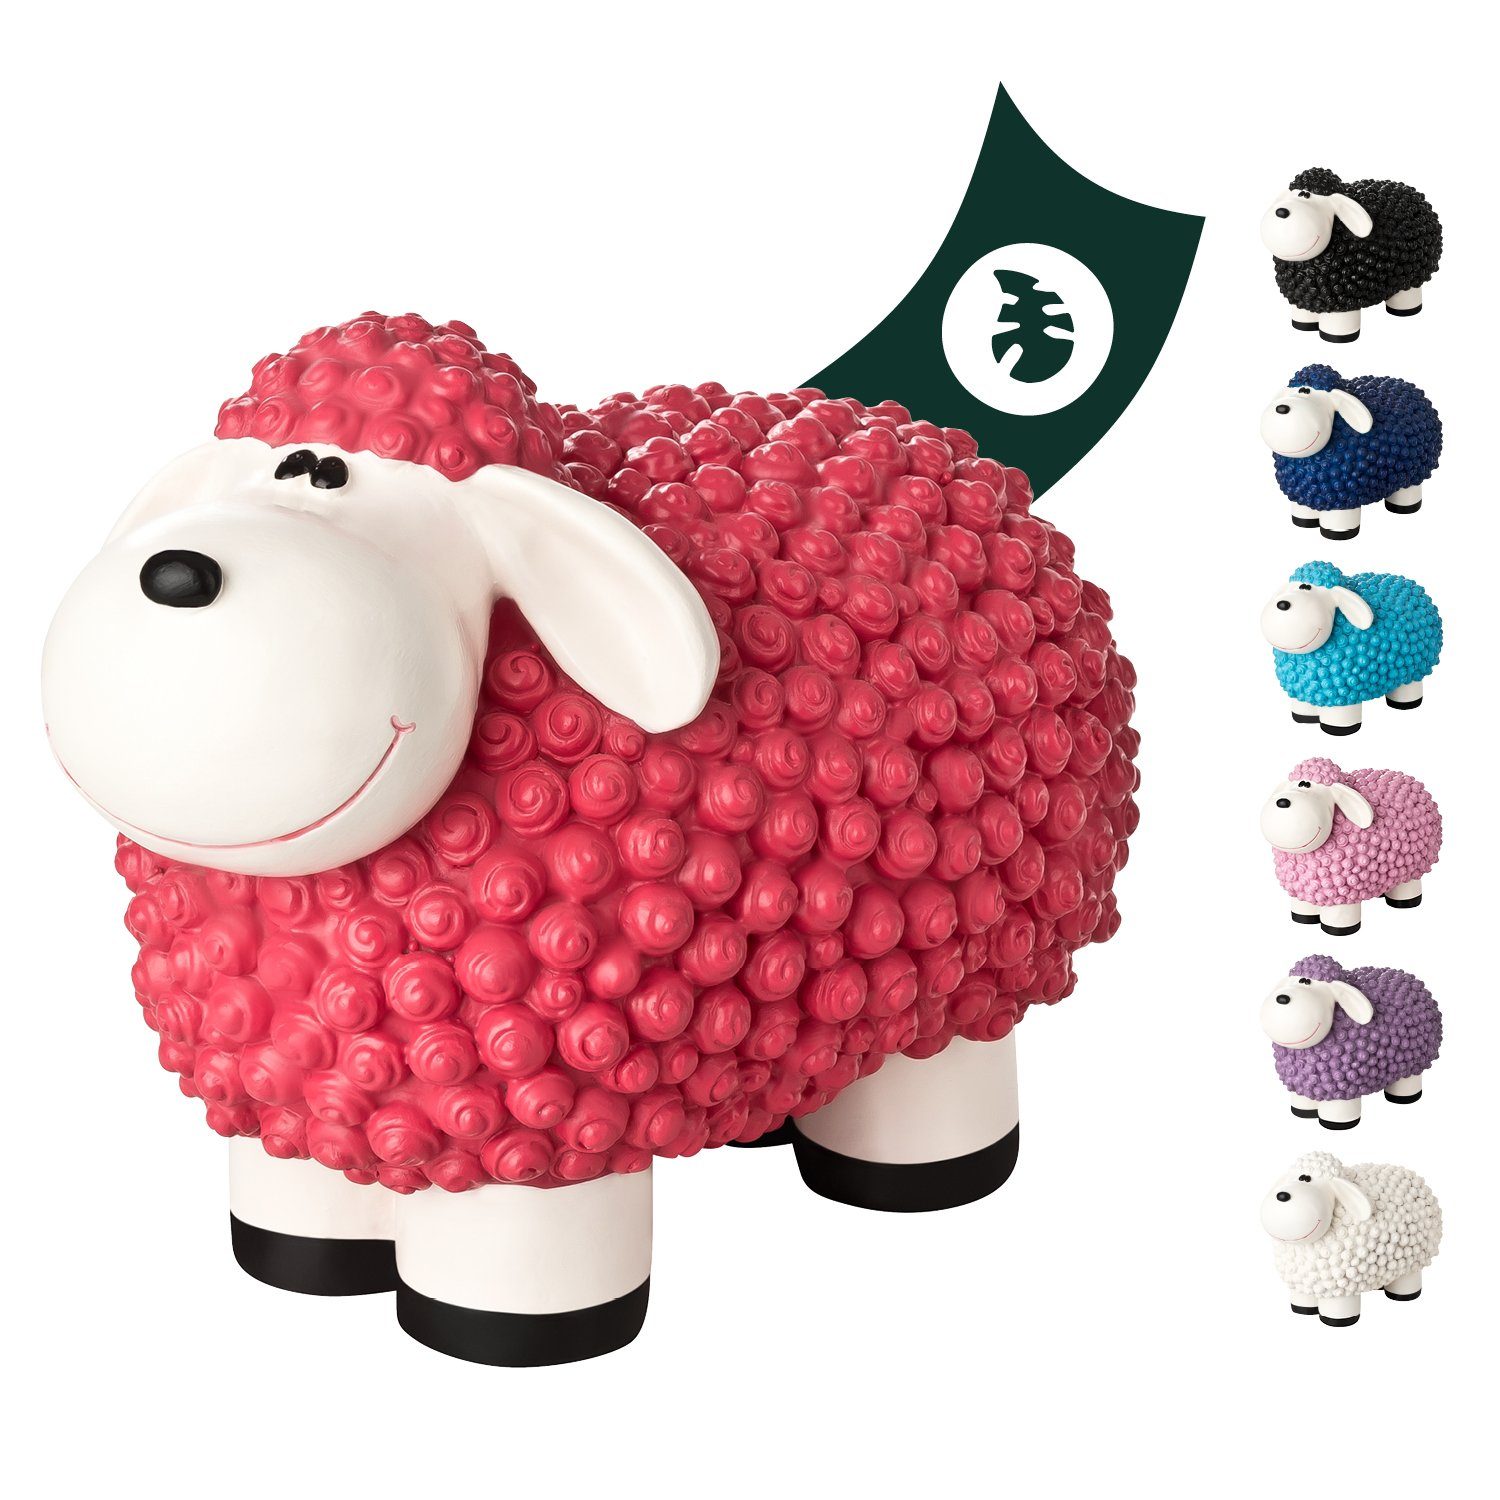 VERDOBA Gartenfigur Gartendeko Mini Schaf - Wetterfeste Gartenfigur - Deko Schaf für Außen, Polyresin Pink